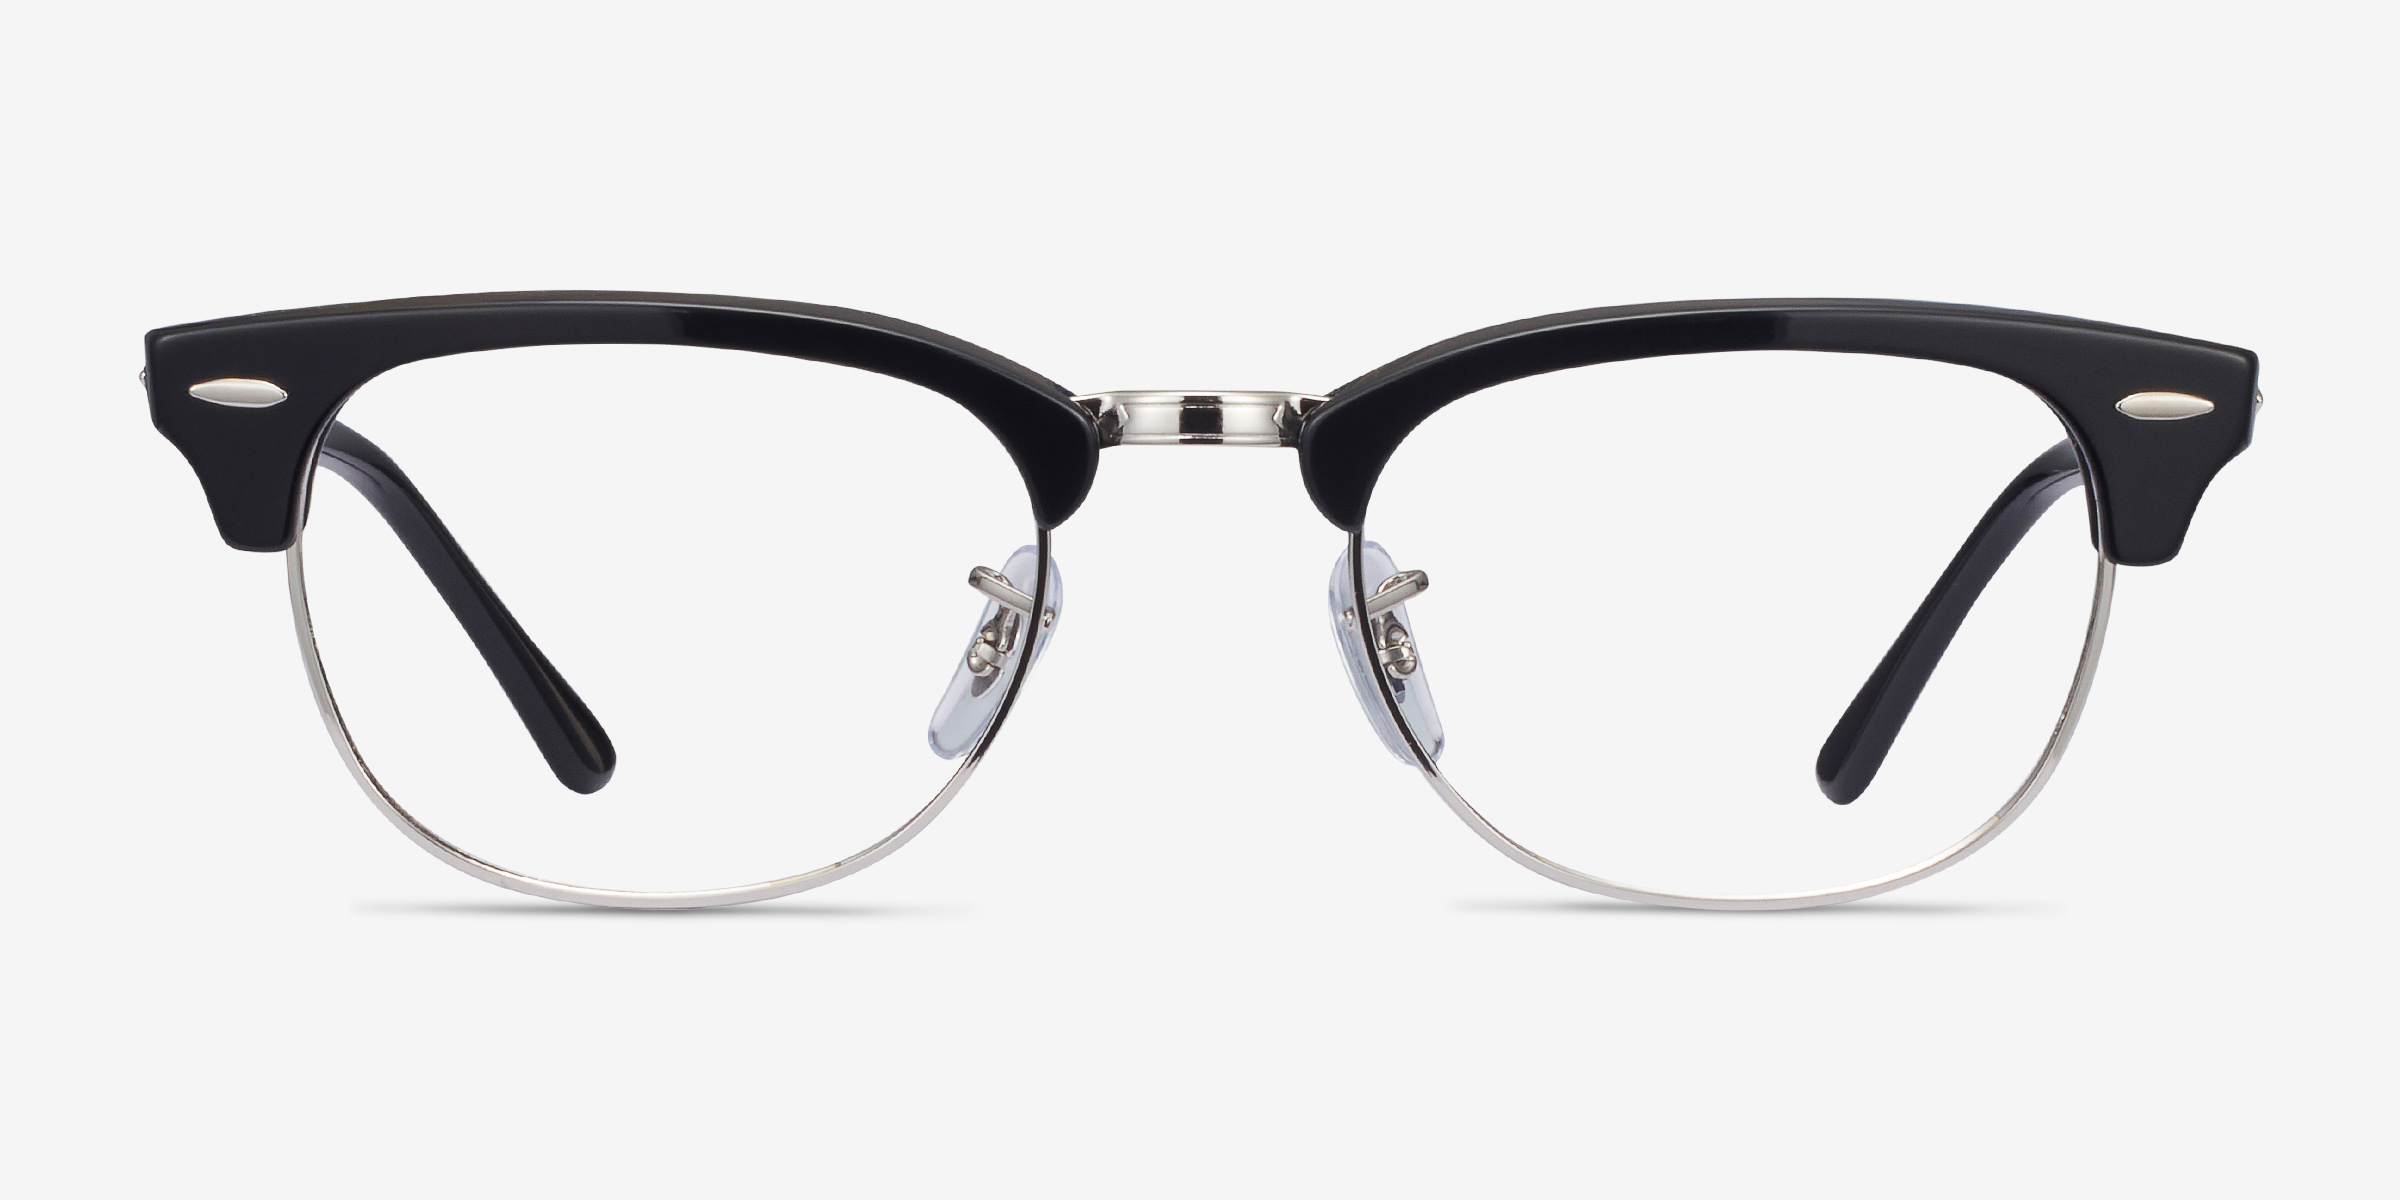 Ray Ban Rb5154 Clubmaster Browline Black Frame Eyeglasses Eyebuydirect Canada